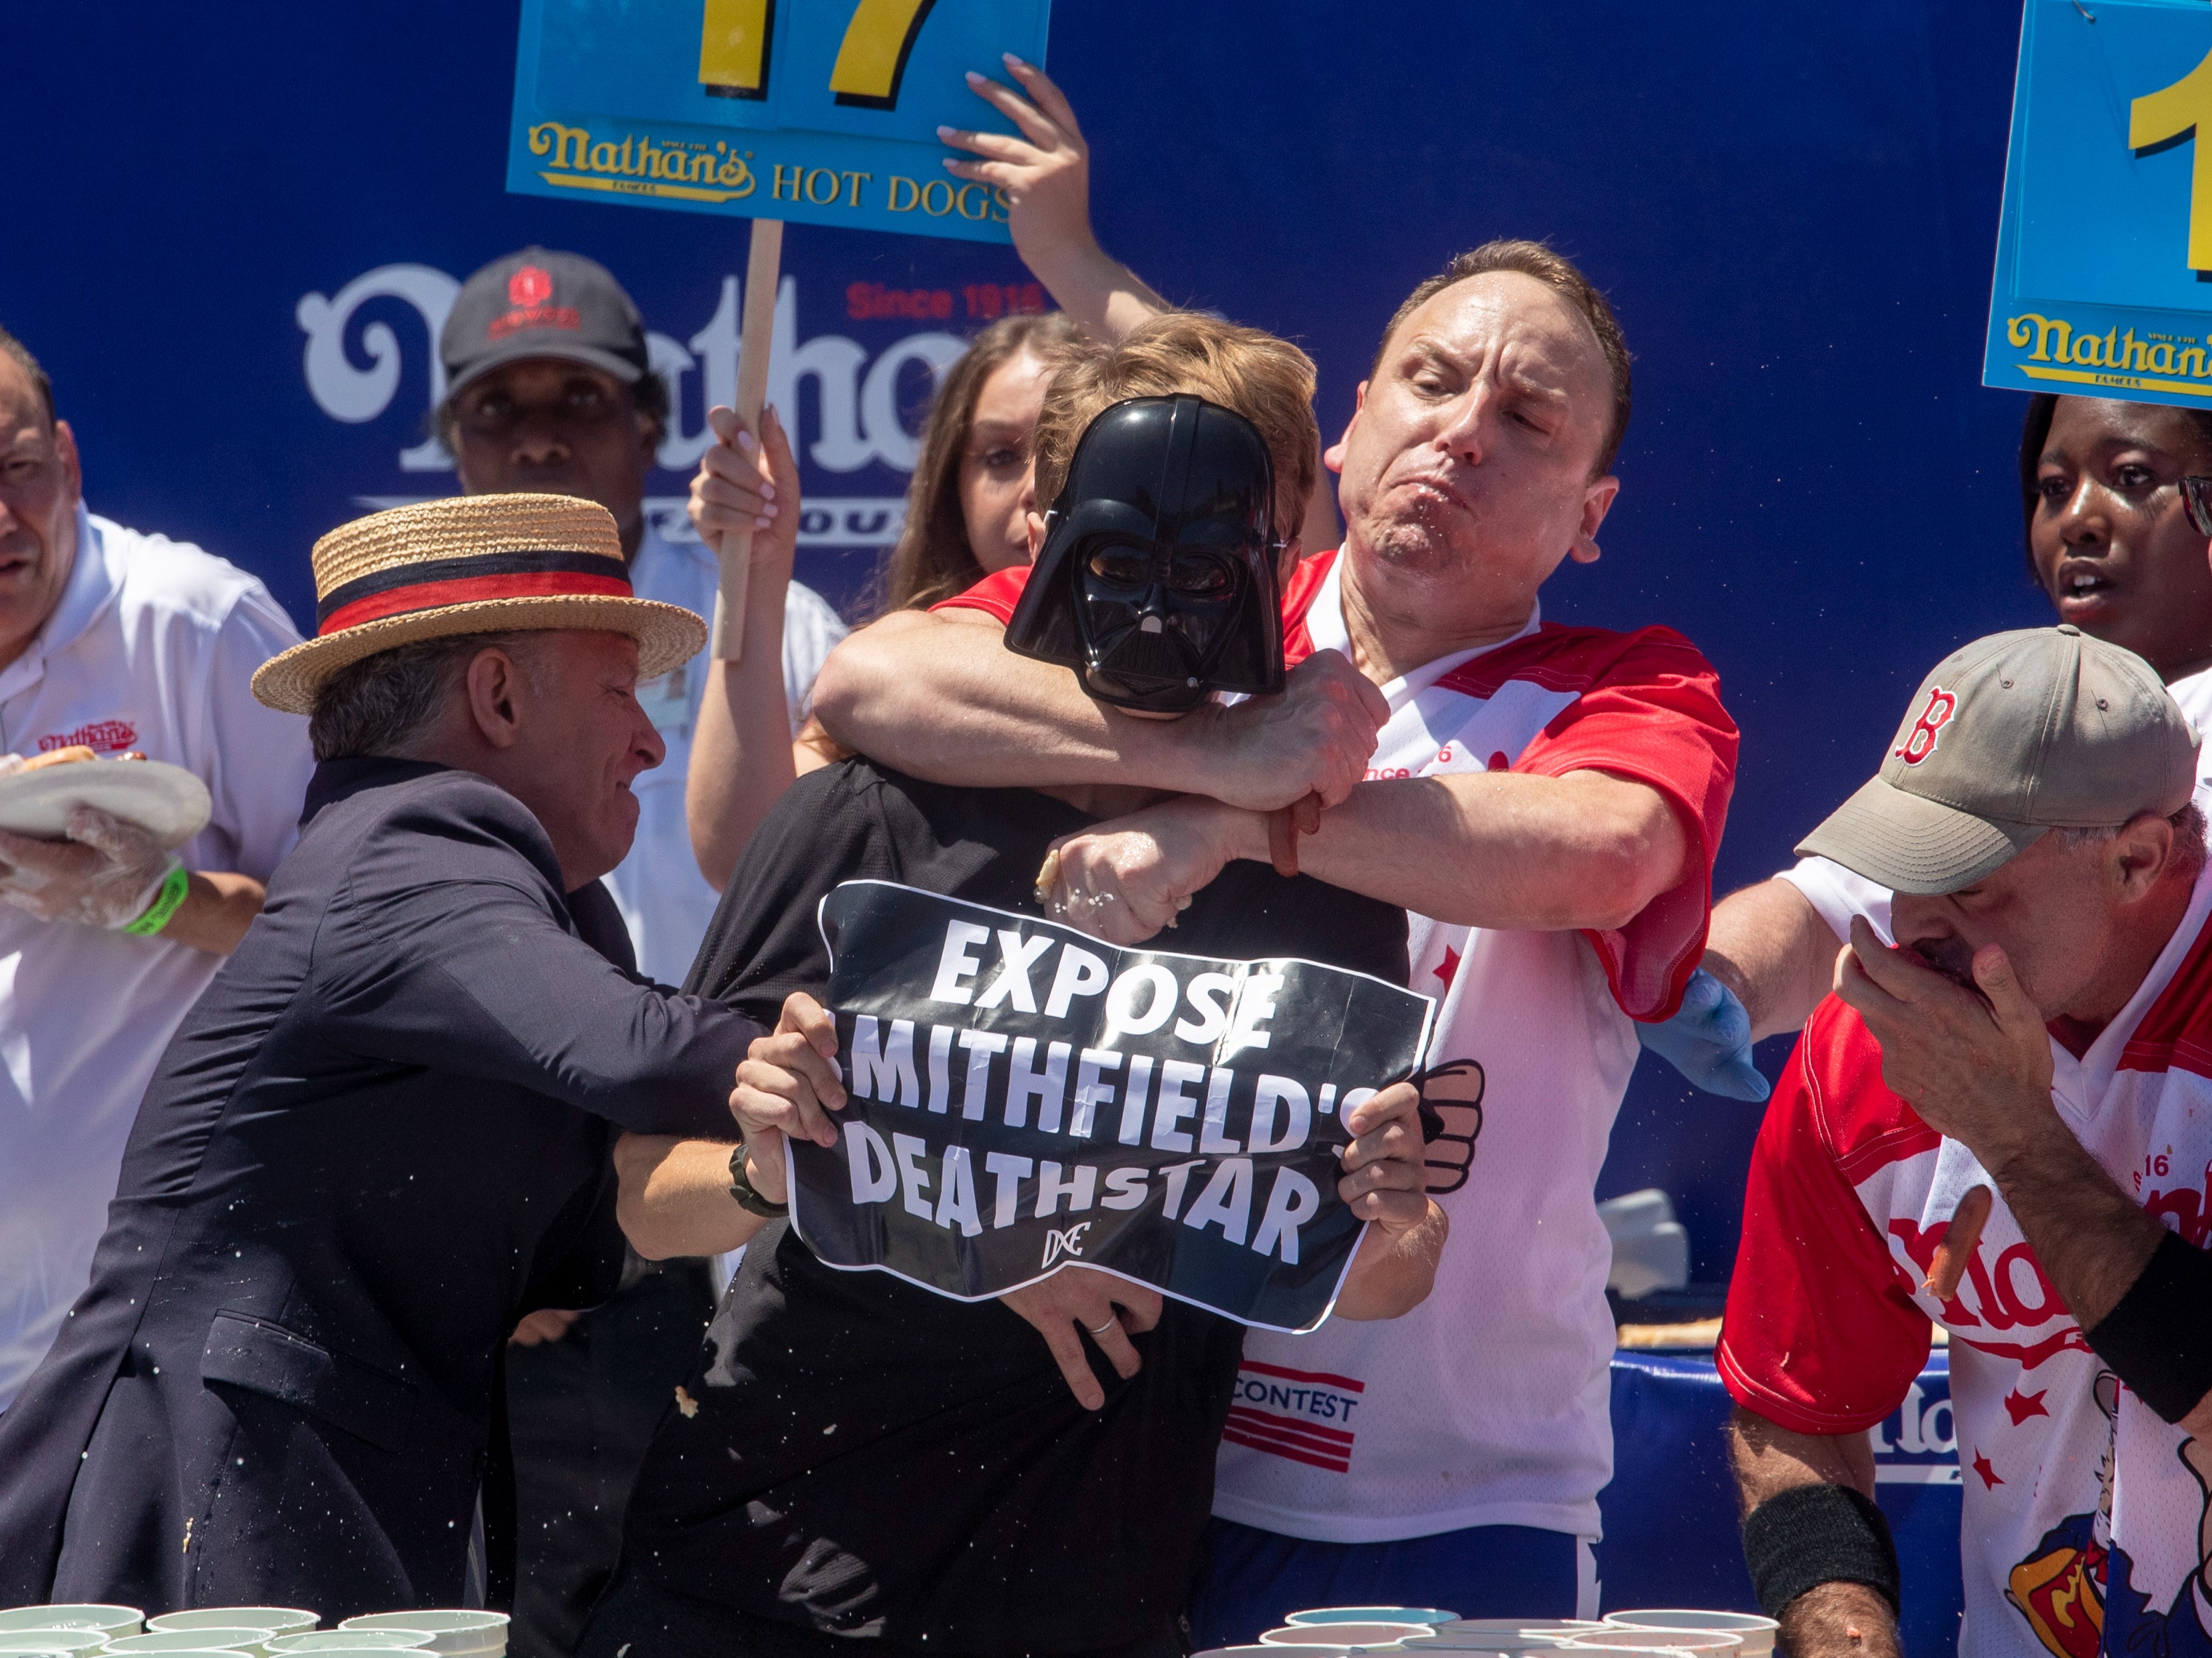 El competitivo Joey Chestnut (centro) se enfrenta a un manifestante con un cartel de “Exponer la Estrella de la Muerte de Smithfield” durante el Concurso Internacional de Hot Dogs de Nathan’s Famous del 4 de julio en Coney Island en Nueva York, Estados Unidos